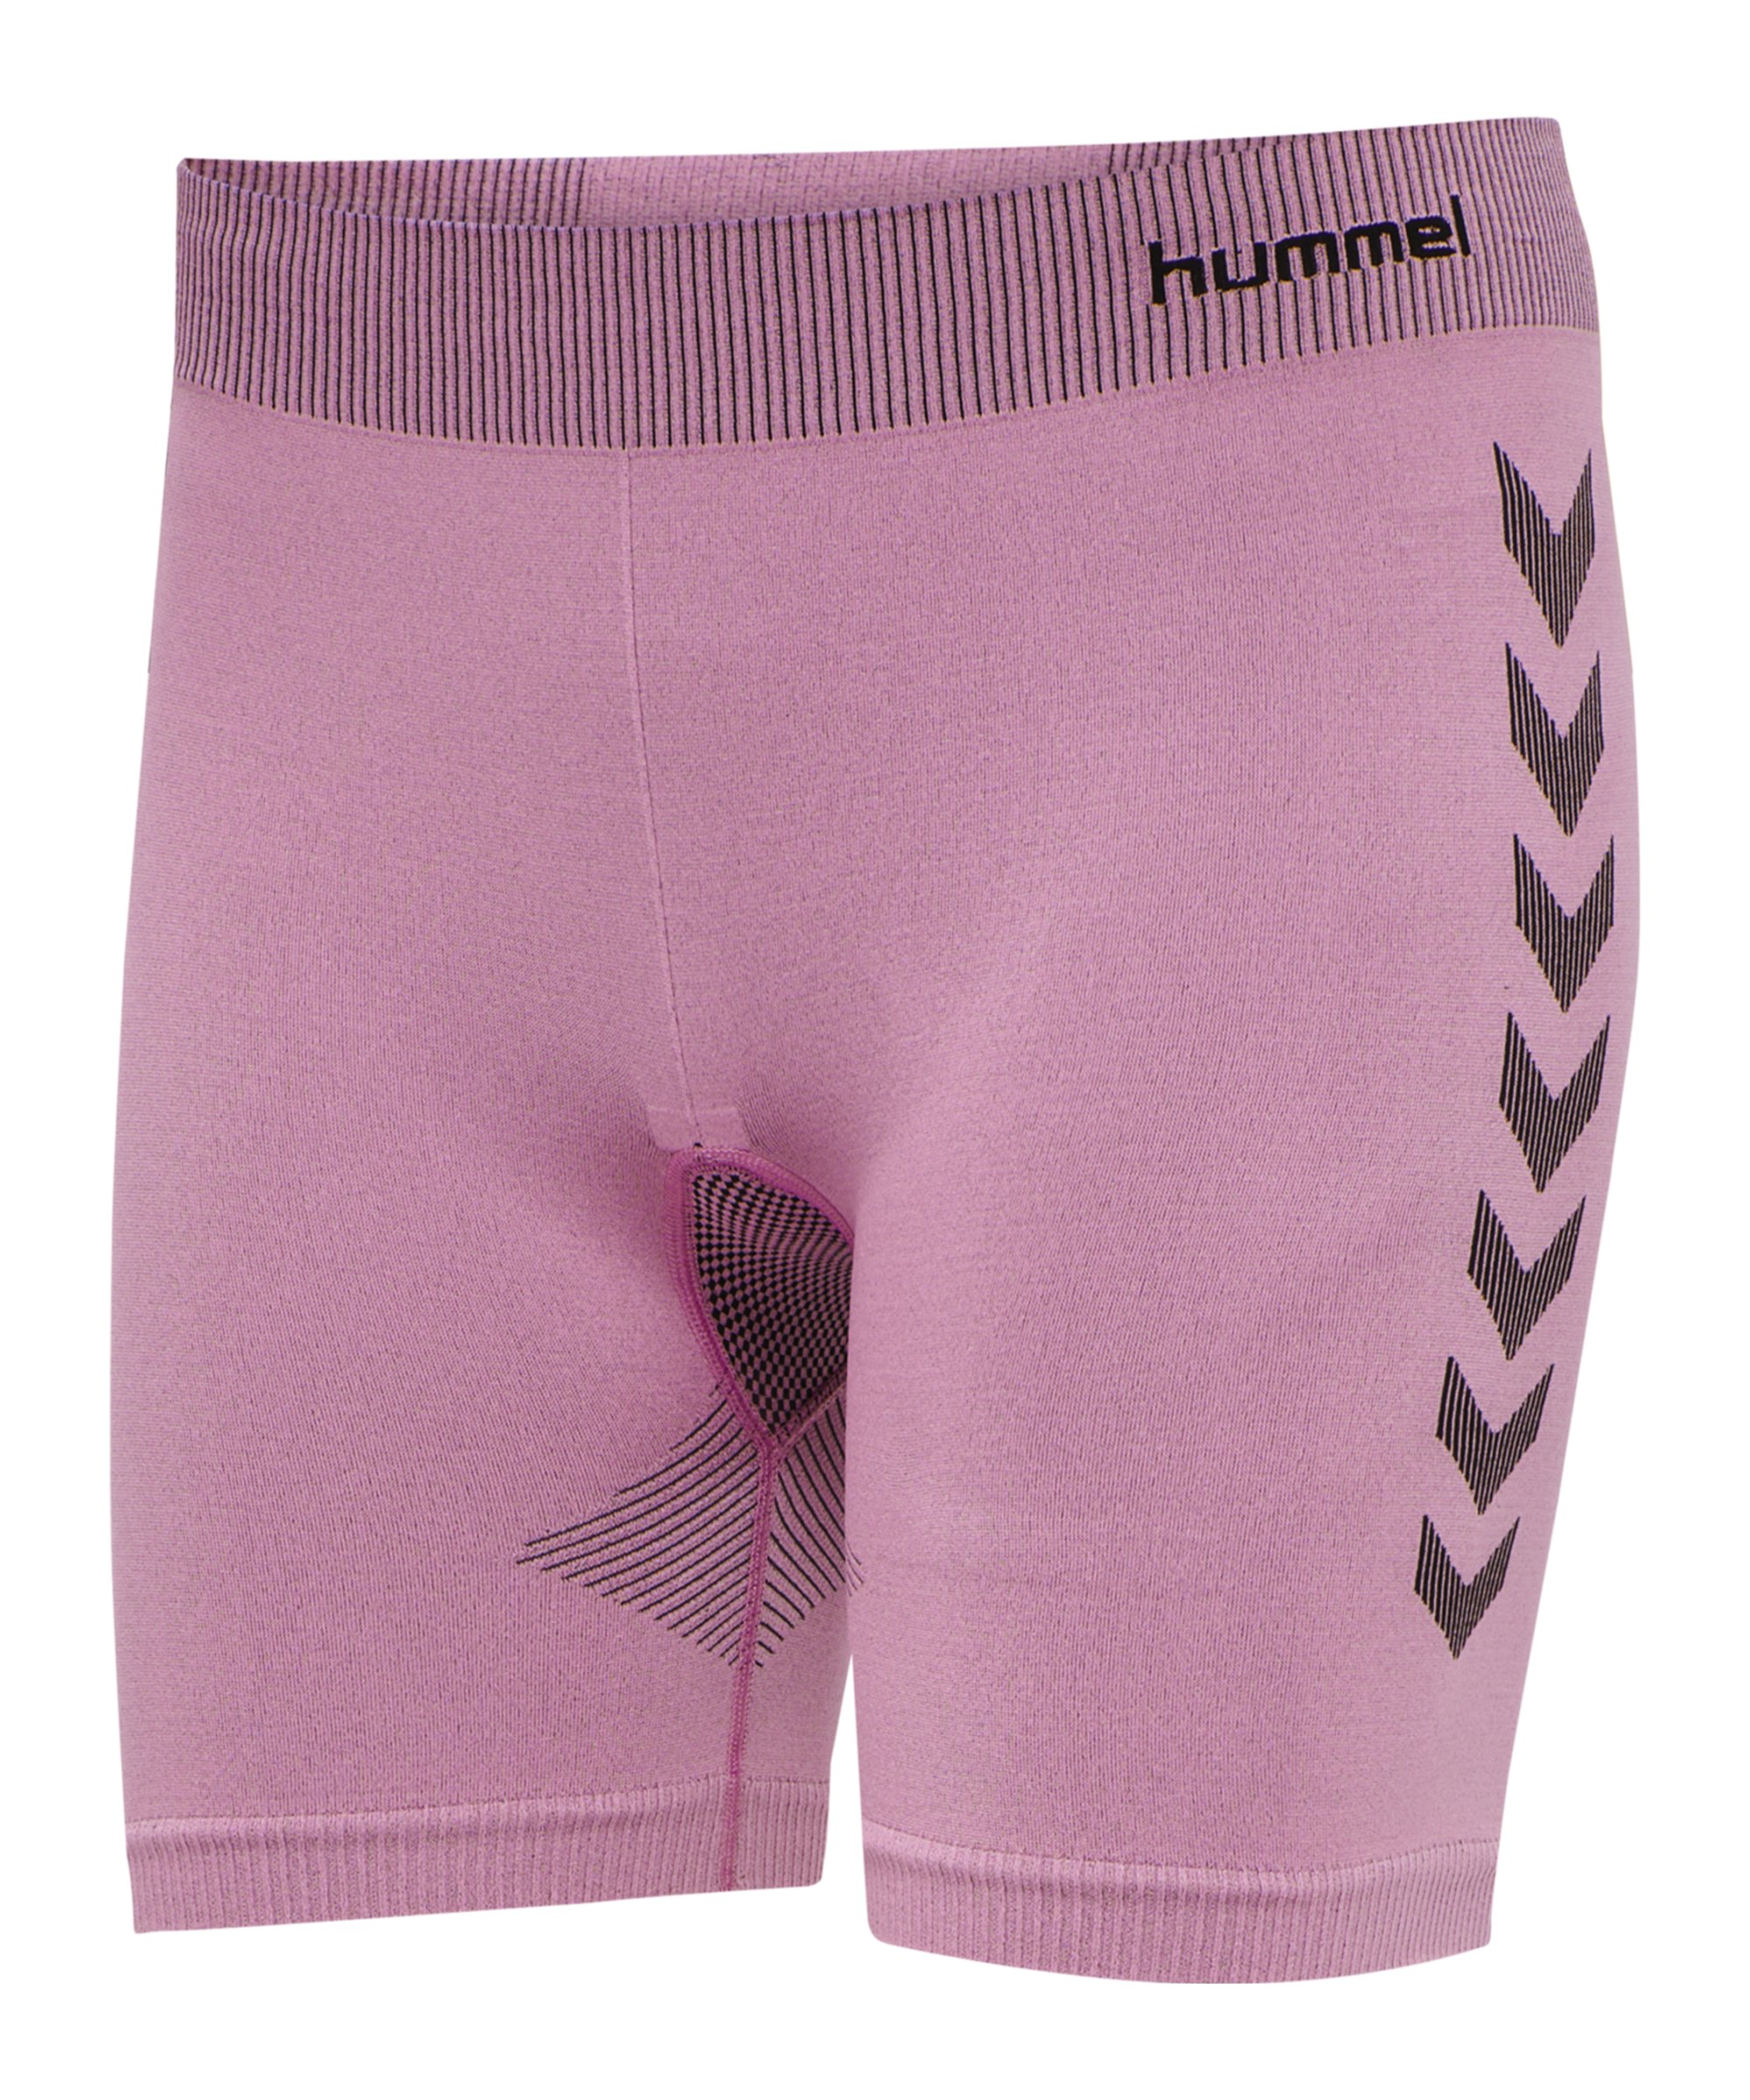 Hummel hmlFIRST Seamless Short Damen Pink F3257 - pink